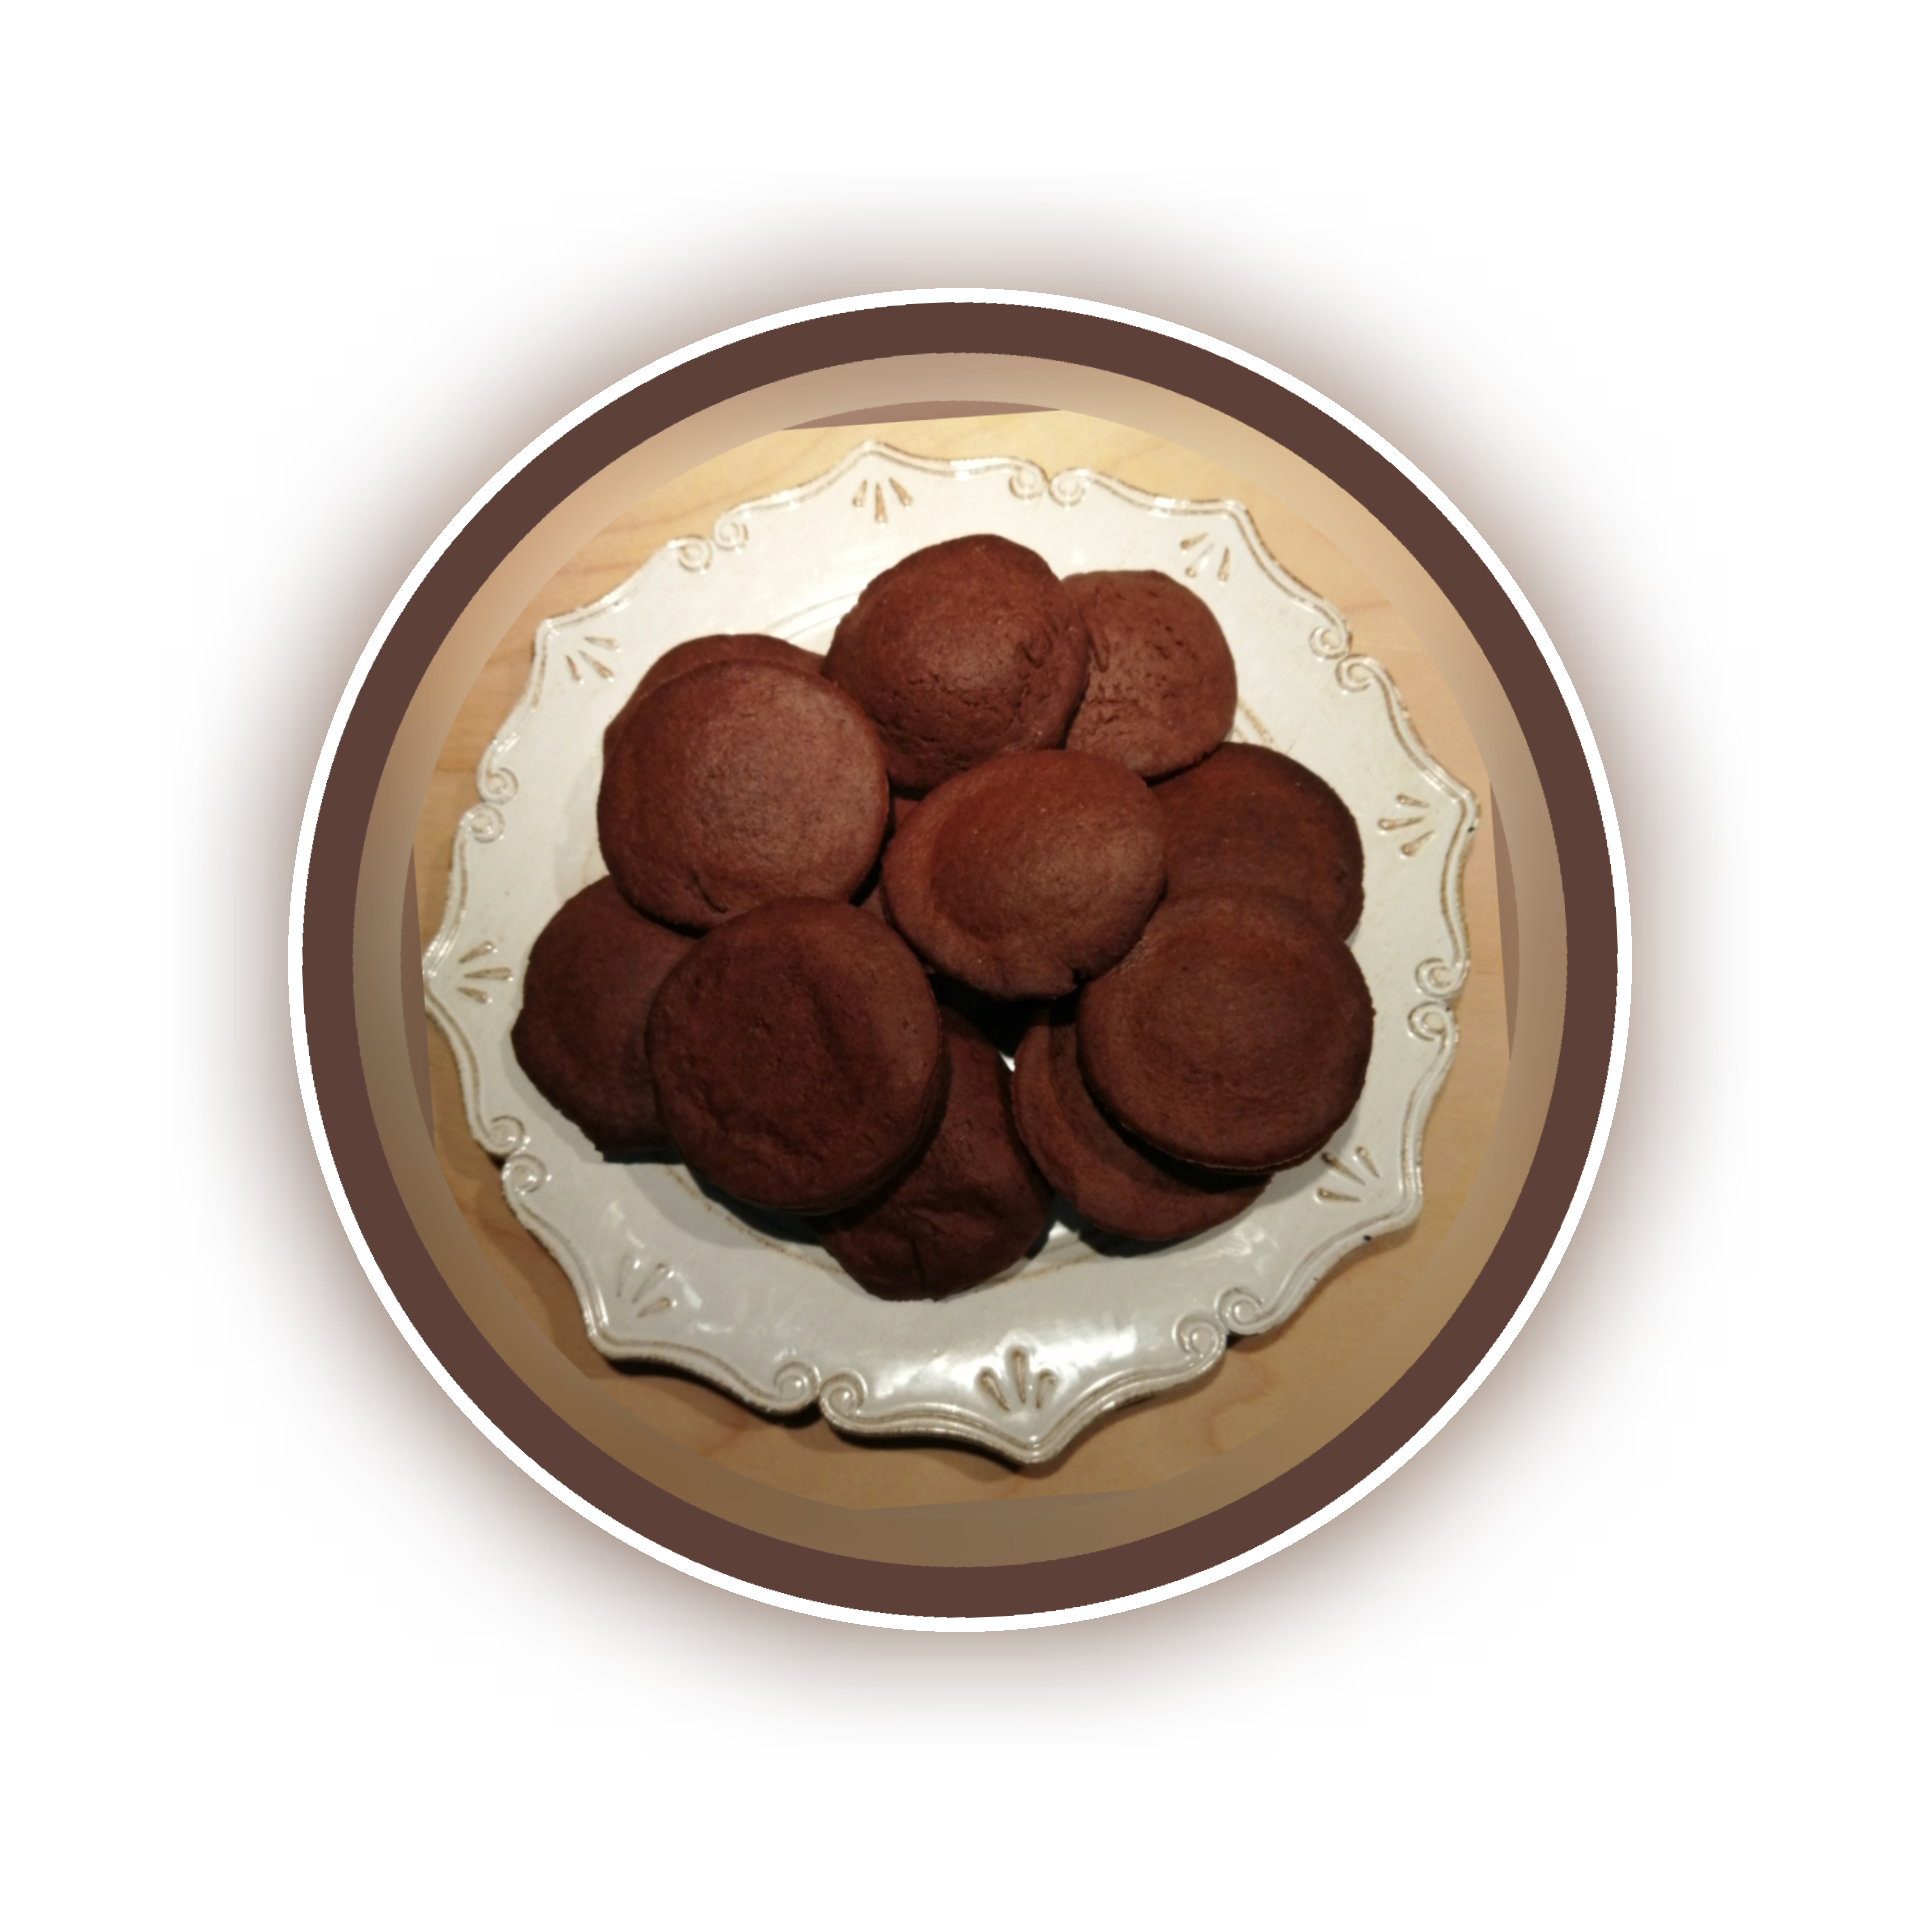 Foto biscotti al cioccolato simili ai grisbi